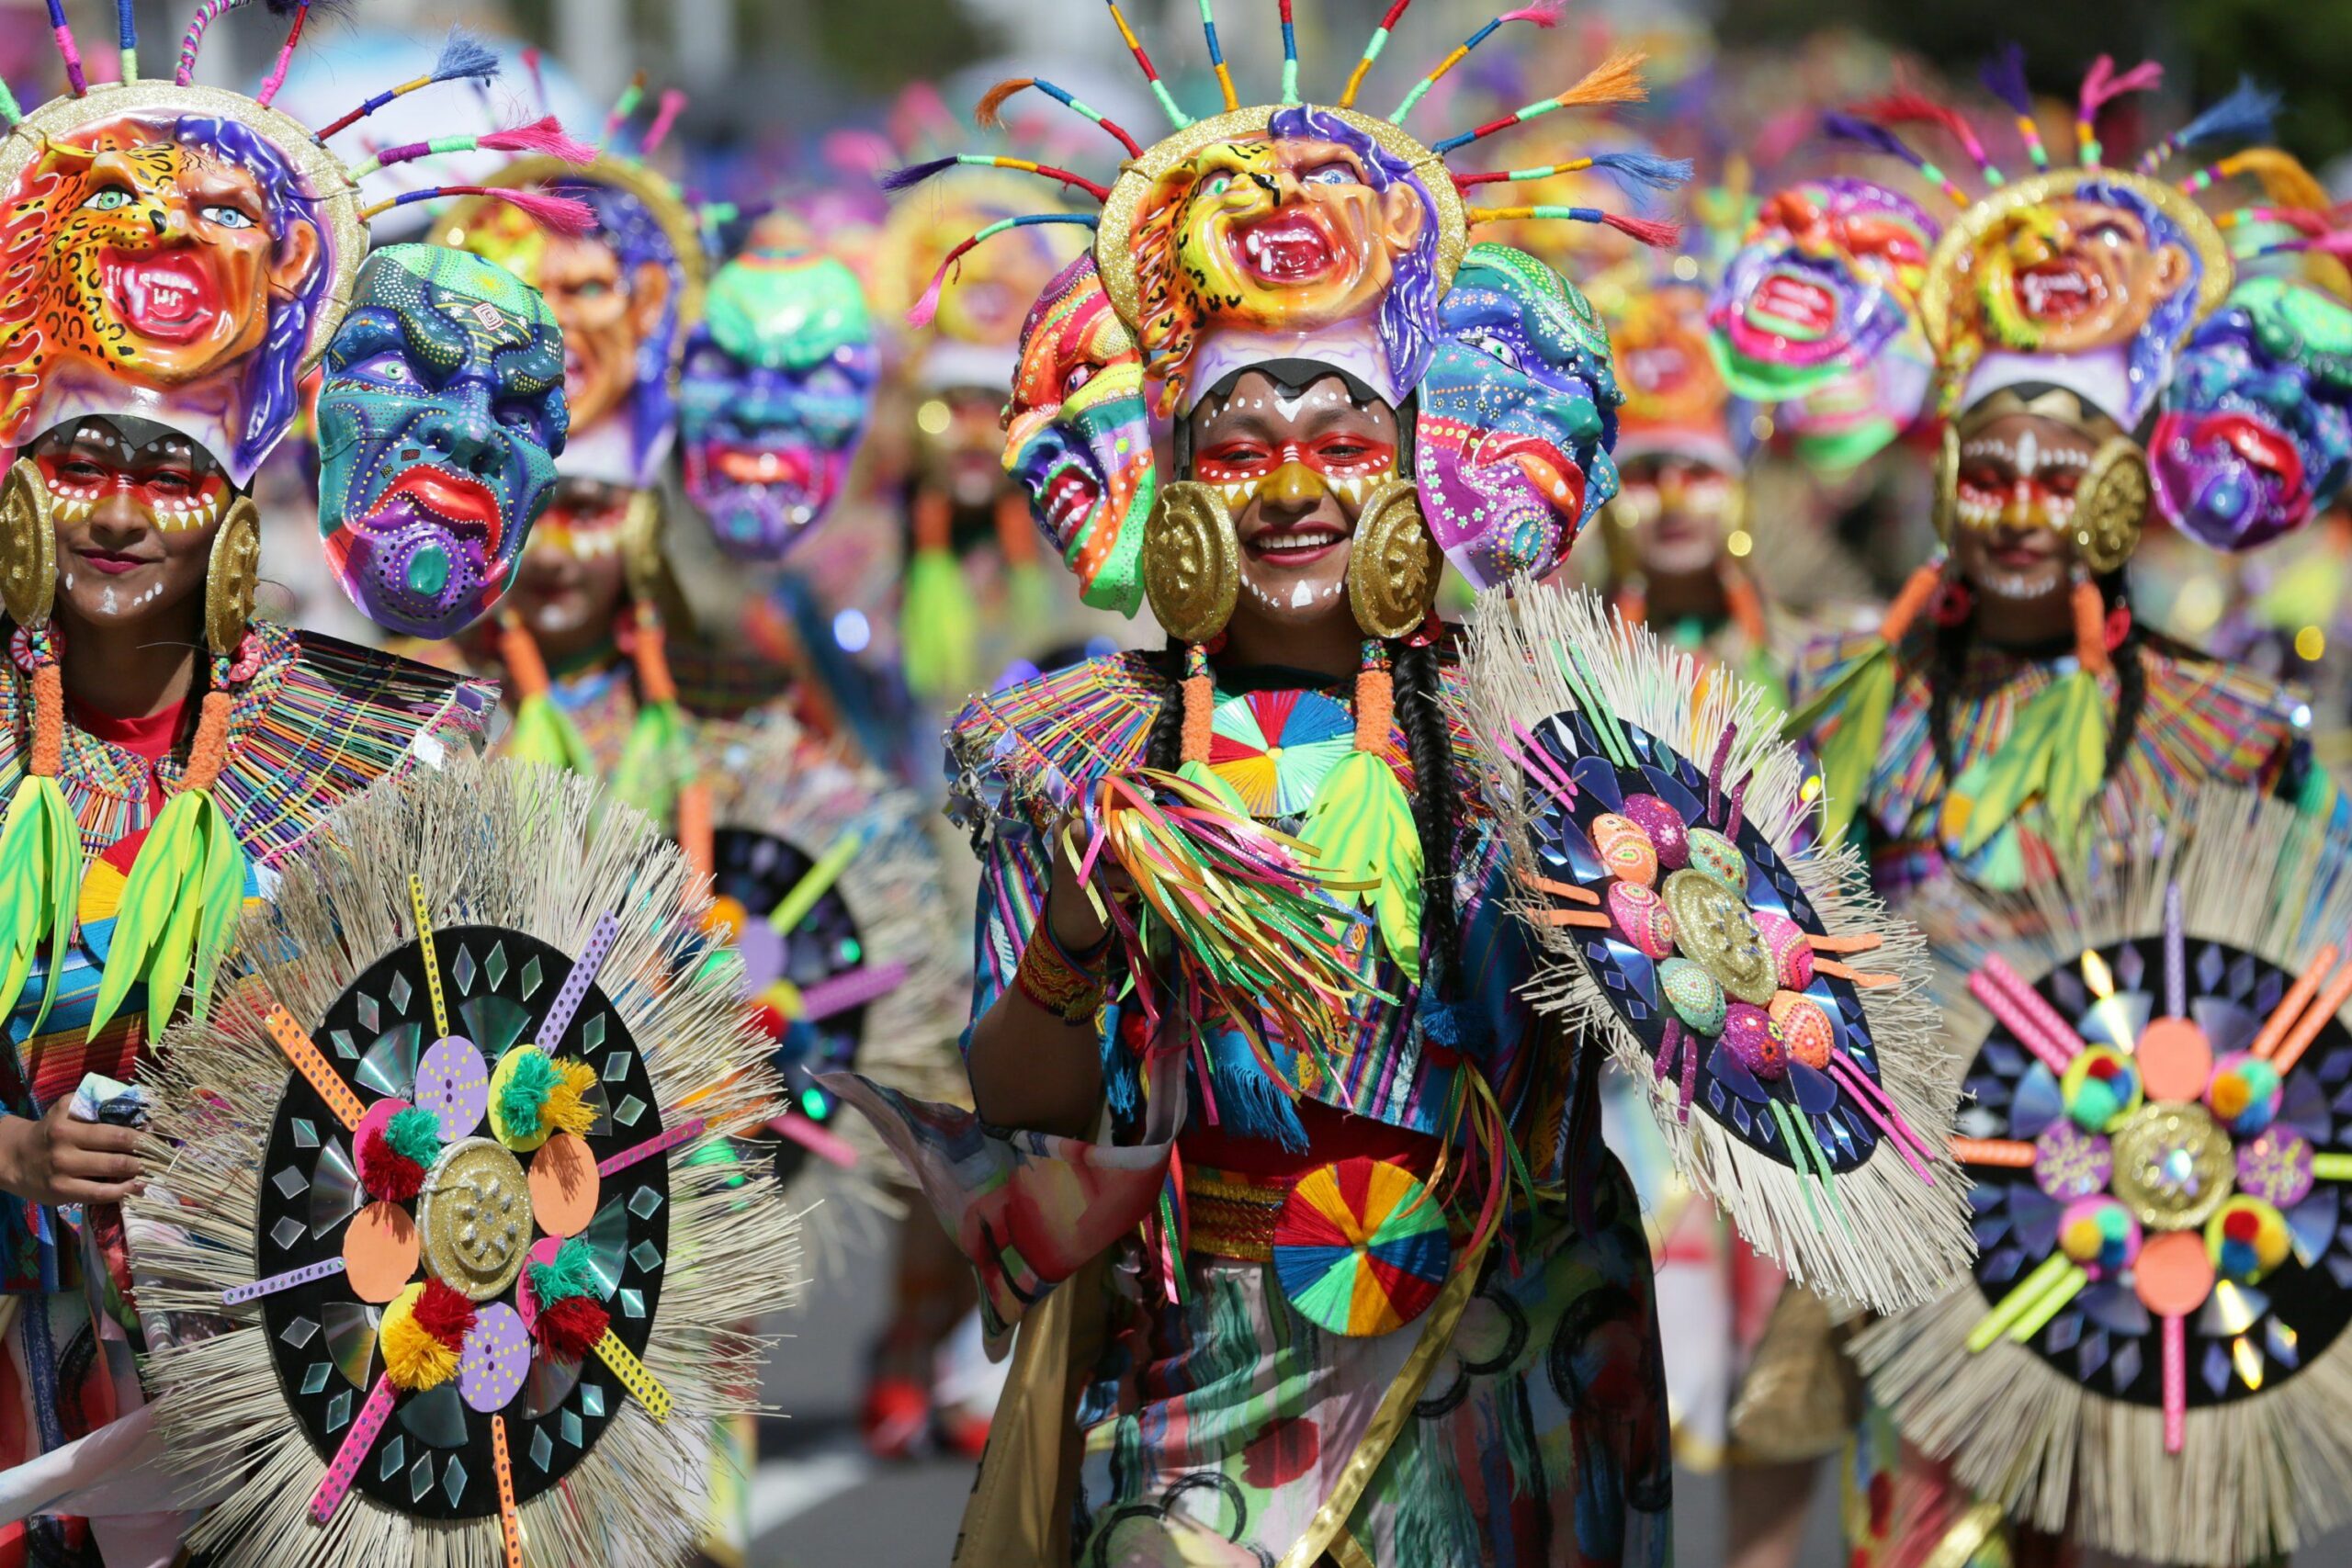 Exploring The Origins and Symbolism of “El Negro y Blanco Carnaval” in Colombia